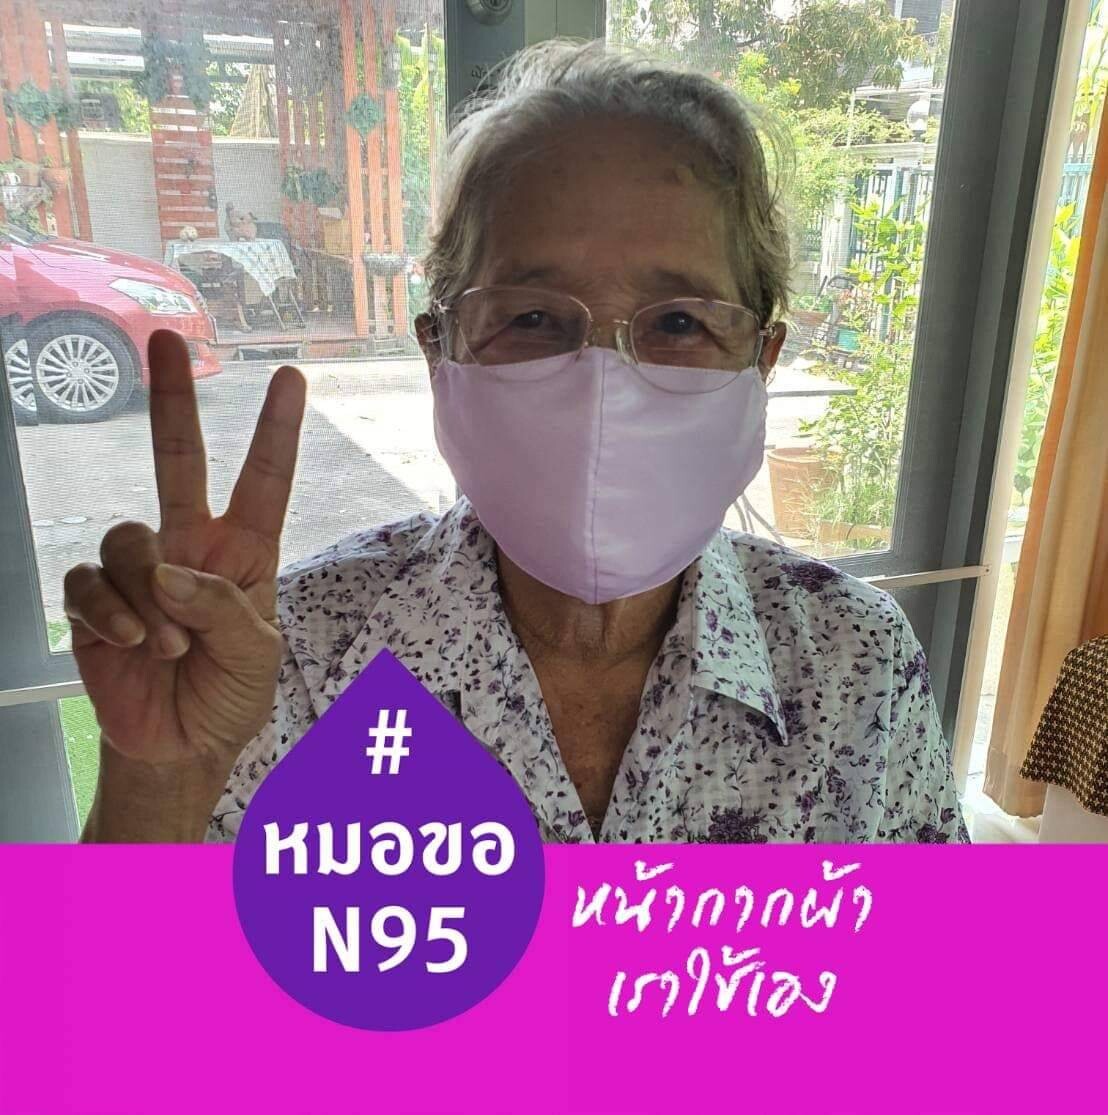 รามาธิบดี เปิดโครงการชวนคนไทยใช้หน้ากากผ้า บริจาคหน้ากาก N95 ให้หมอ พร้อมเชิญชวนคลิกเปลี่ยนรูปโปรไฟล์  กับโครงการ “#หมอขอN95หน้ากากผ้าเราใช้เอง”